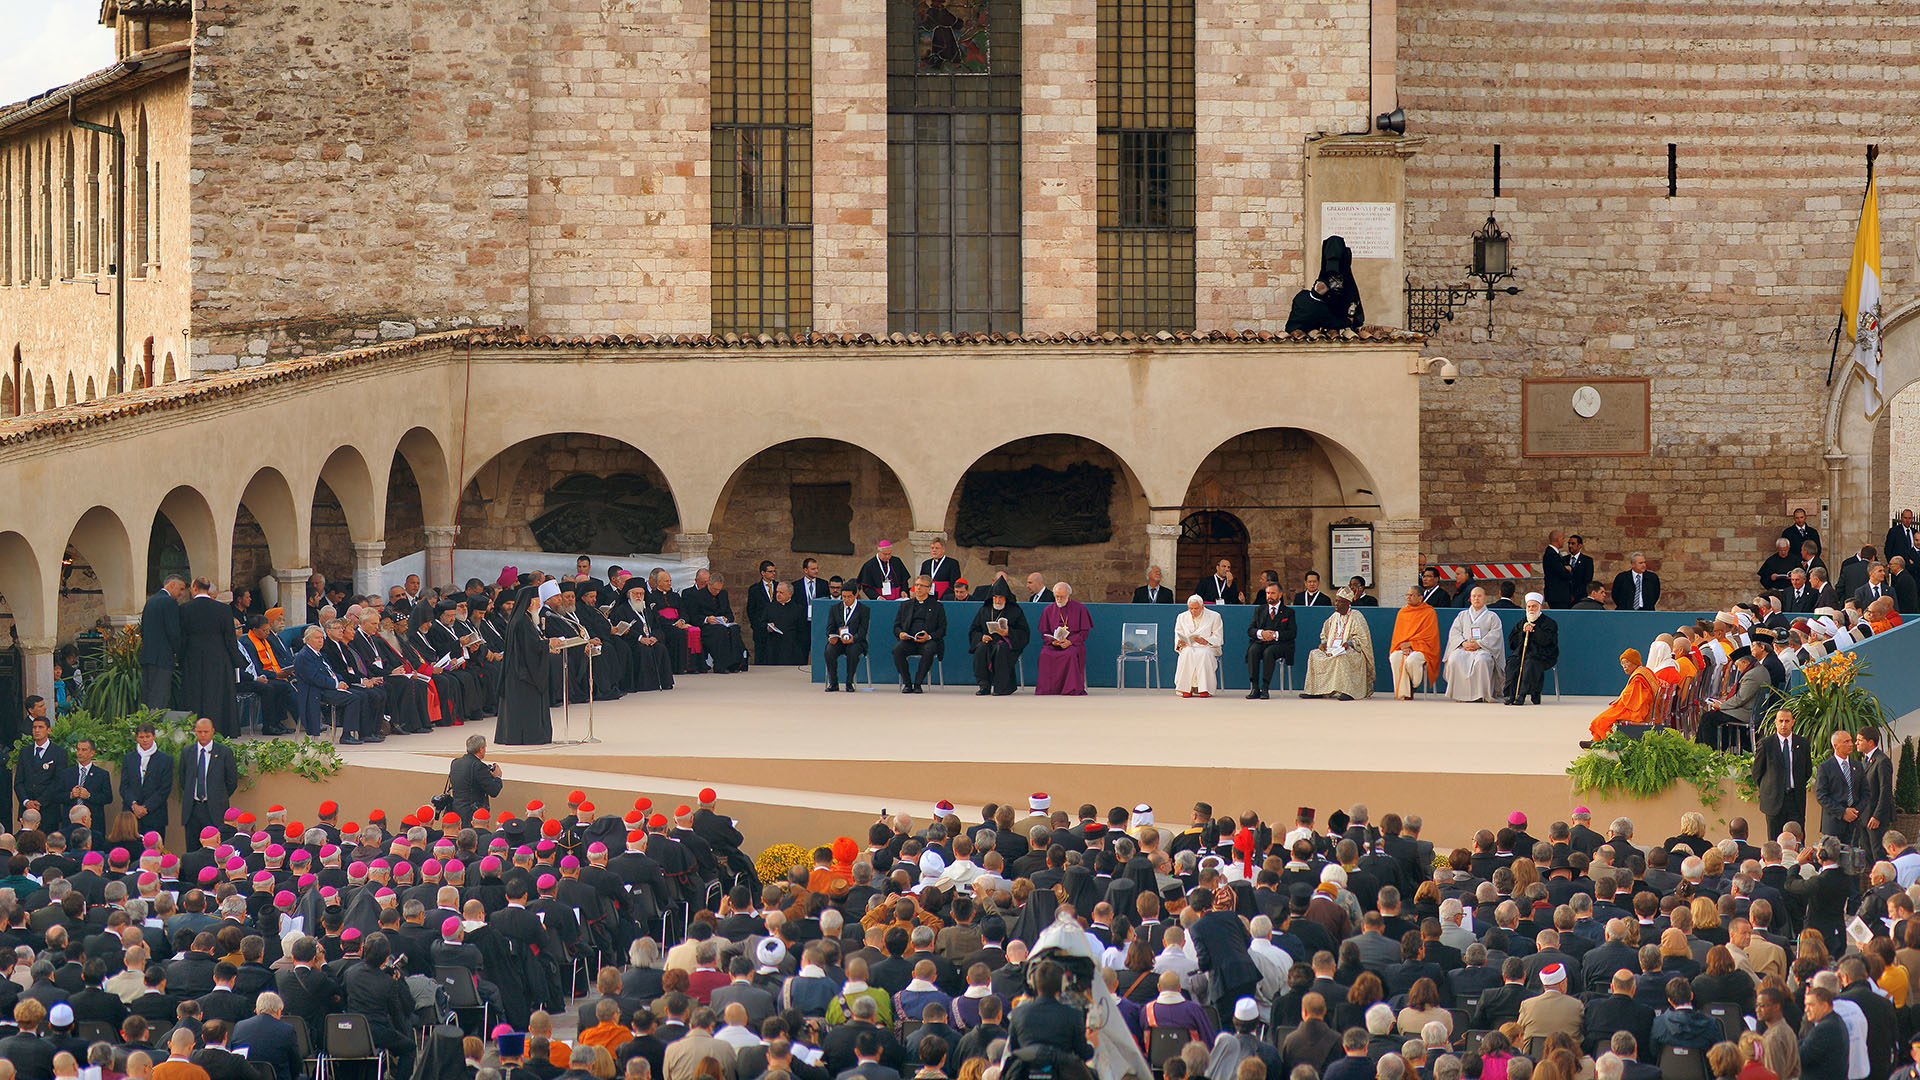 La rencontre interreligieuse à Assise en 2011, lors de la venue de Benoît XVI. (Photo: wikimedia commons/Stephan Kölliker/CC BY-SA 3.0)